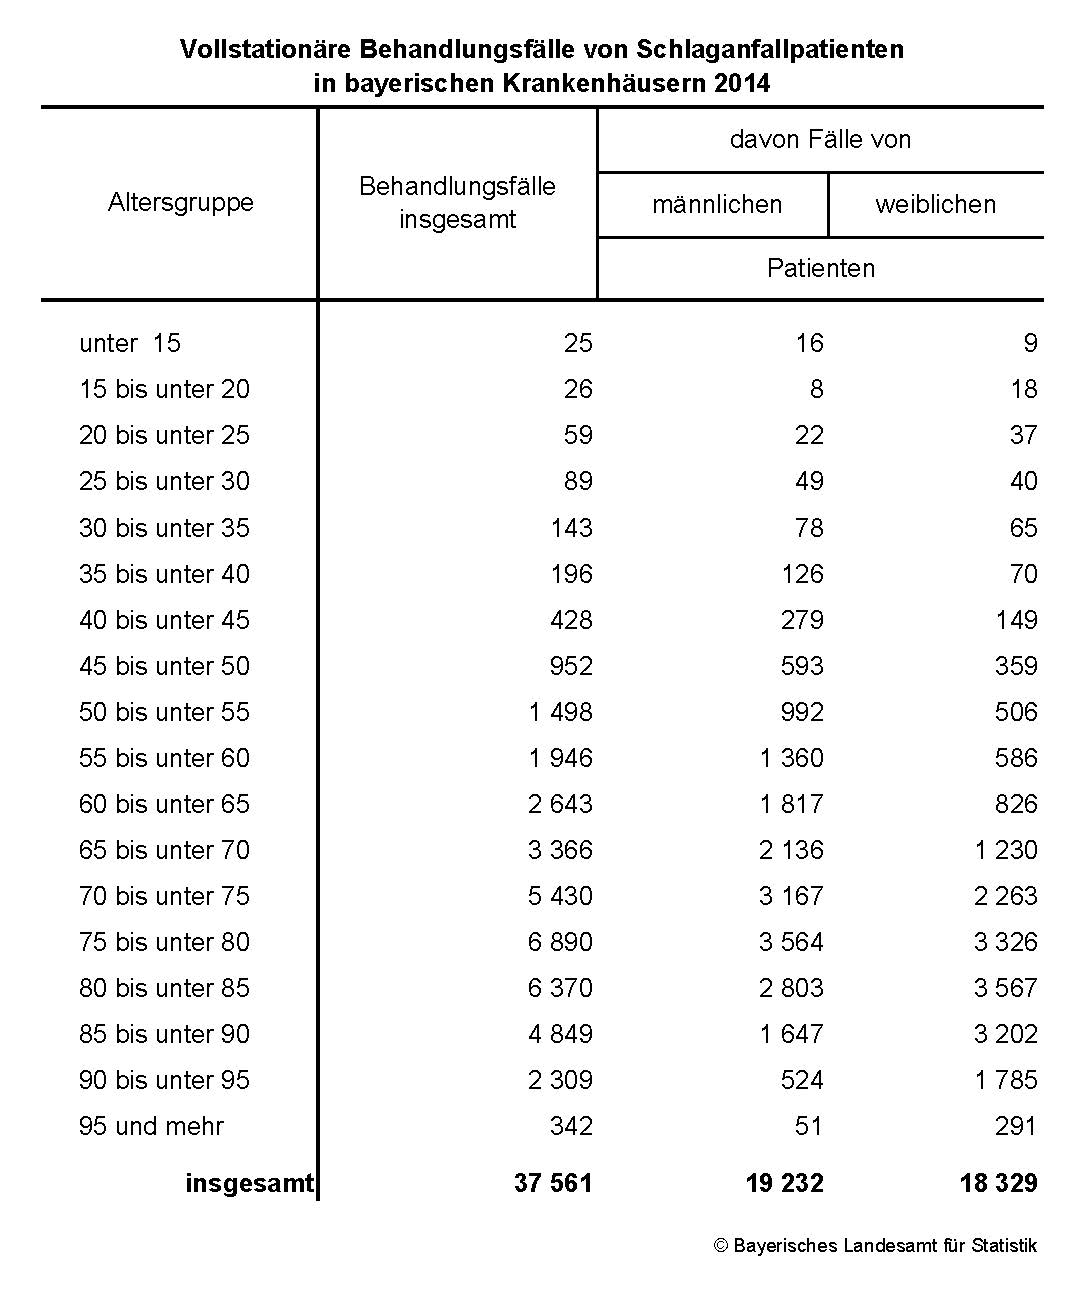 Vollstationäre Behandlungsfälle von Schlaganfallpatienten in bayerischen Krankenhäusern 2014